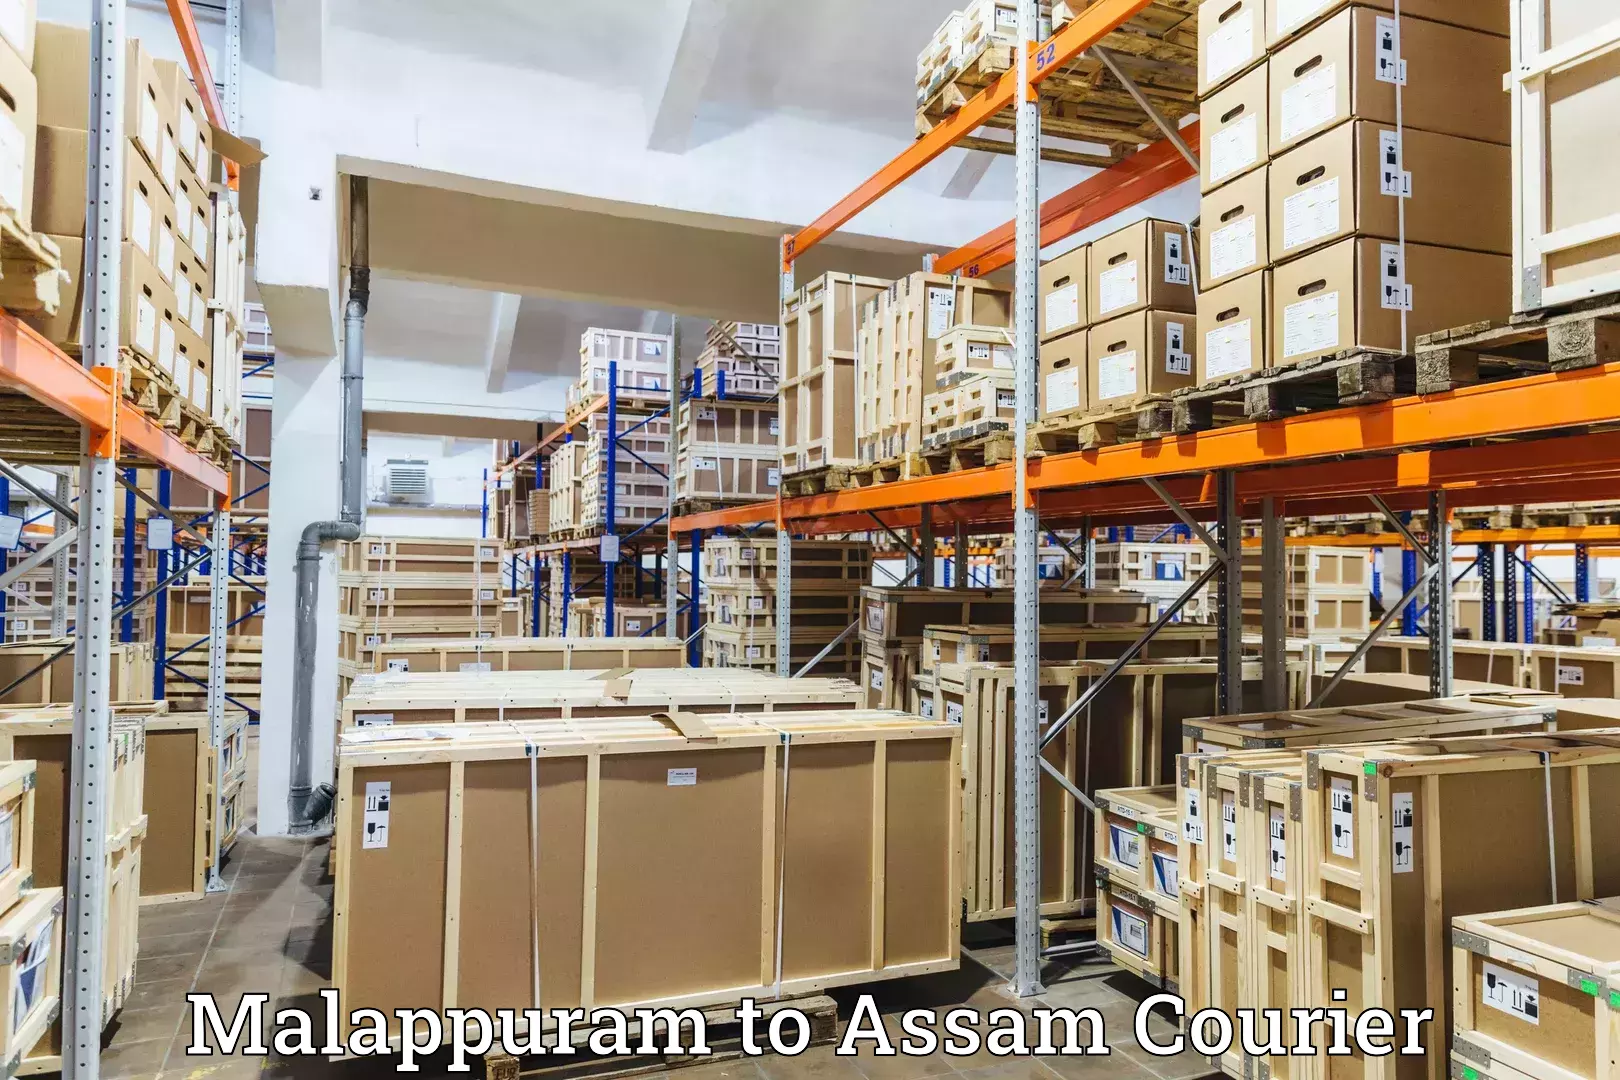 Online package tracking Malappuram to Puranigudam